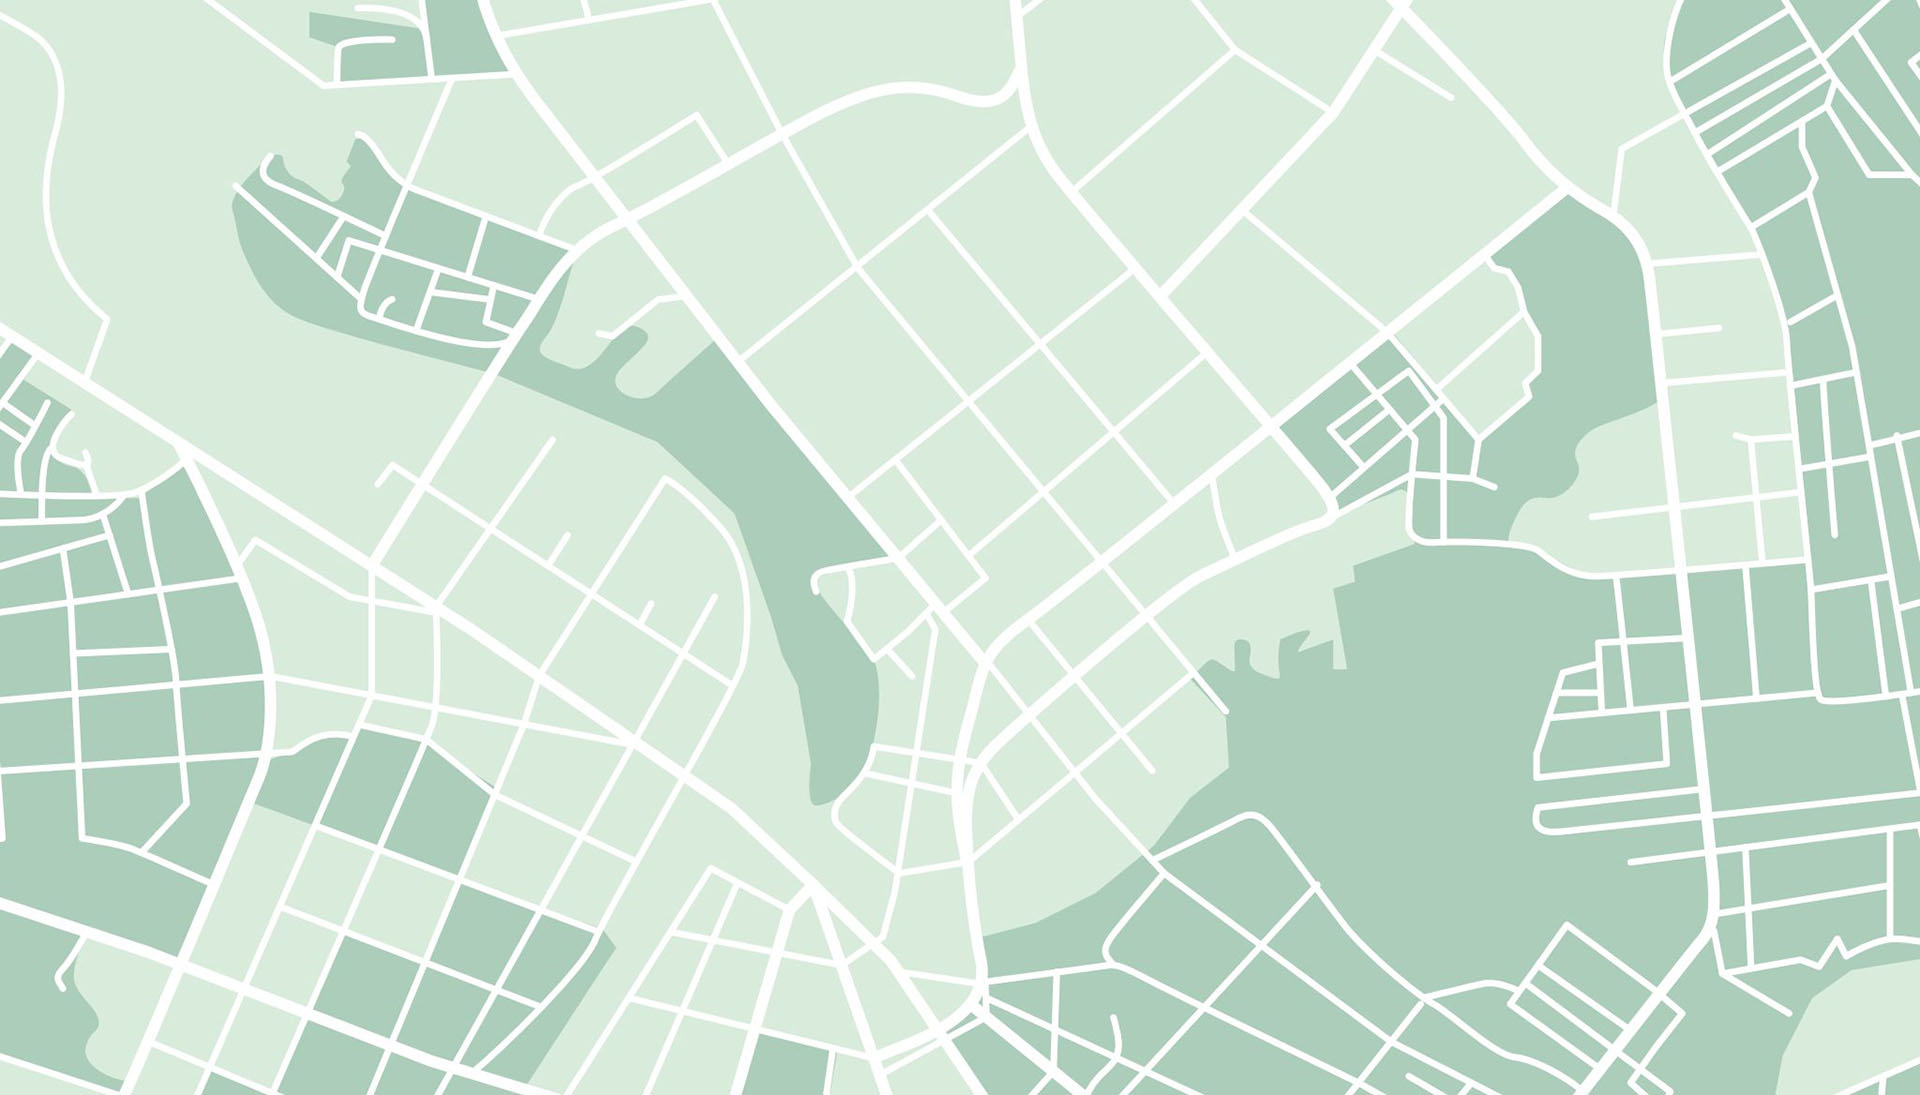 An abstract green street map